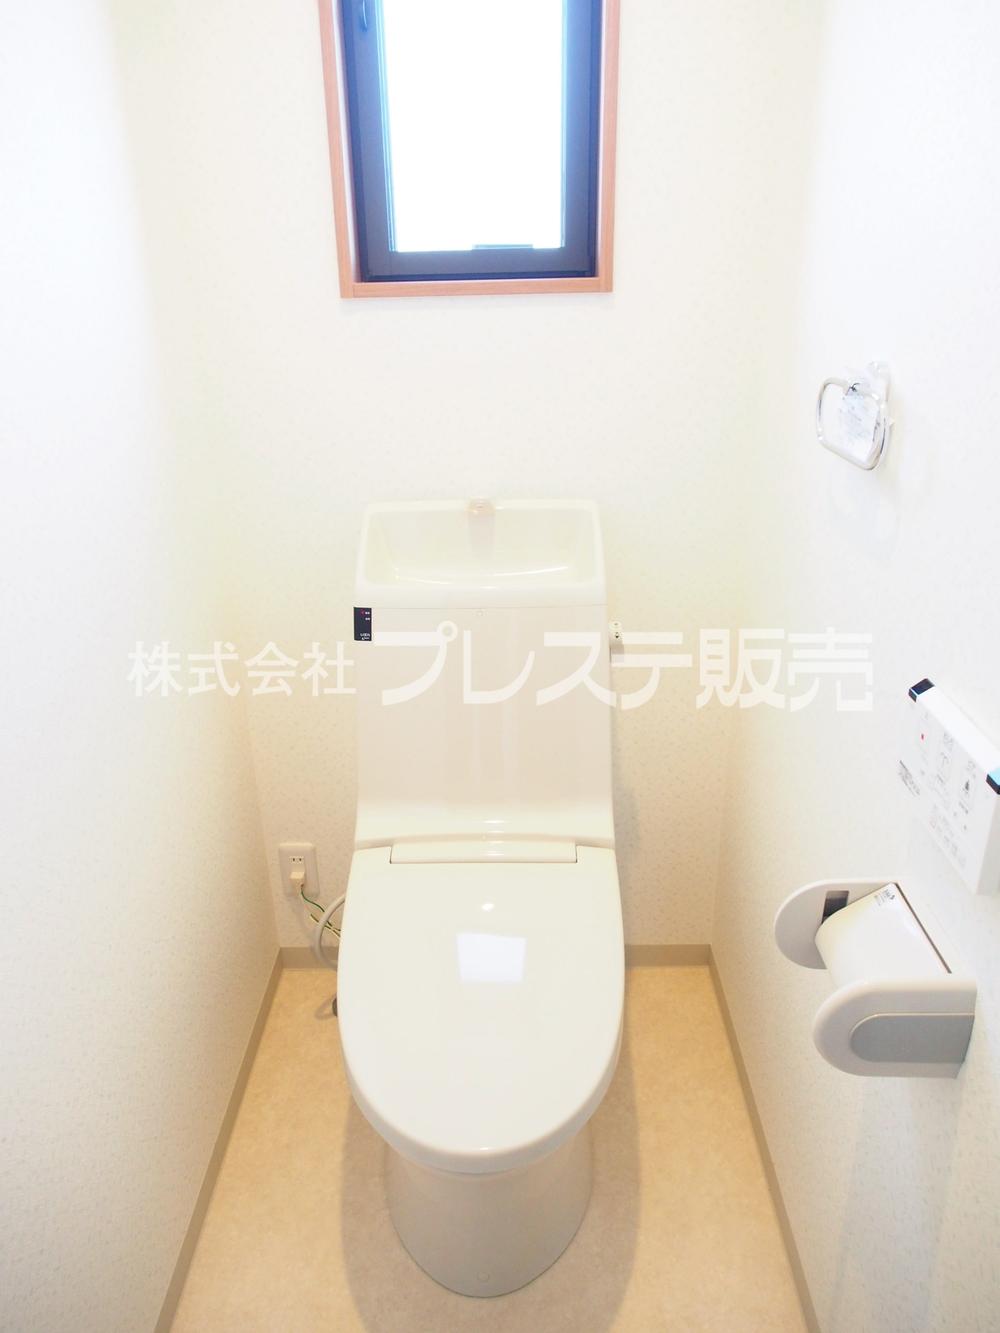 Toilet. Local photo (second floor toilet)